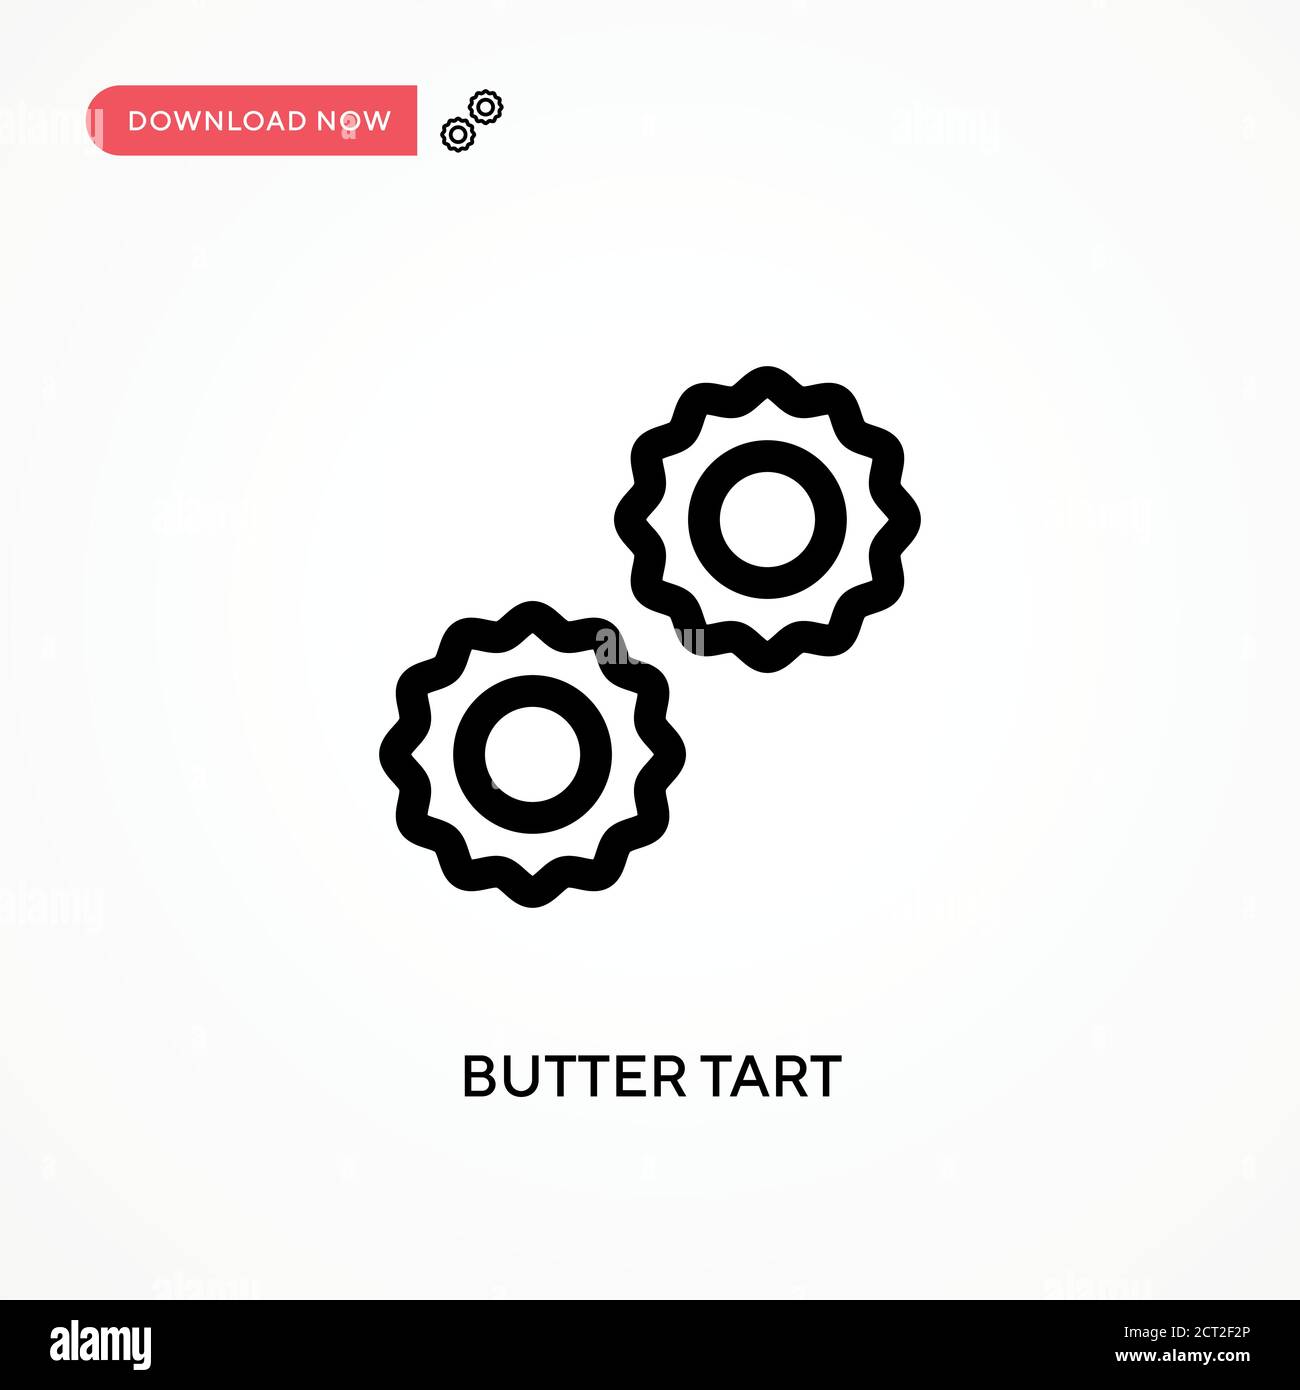 Icône de vecteur simple Butter Start. Illustration moderne et simple à vecteur plat pour site Web ou application mobile Illustration de Vecteur